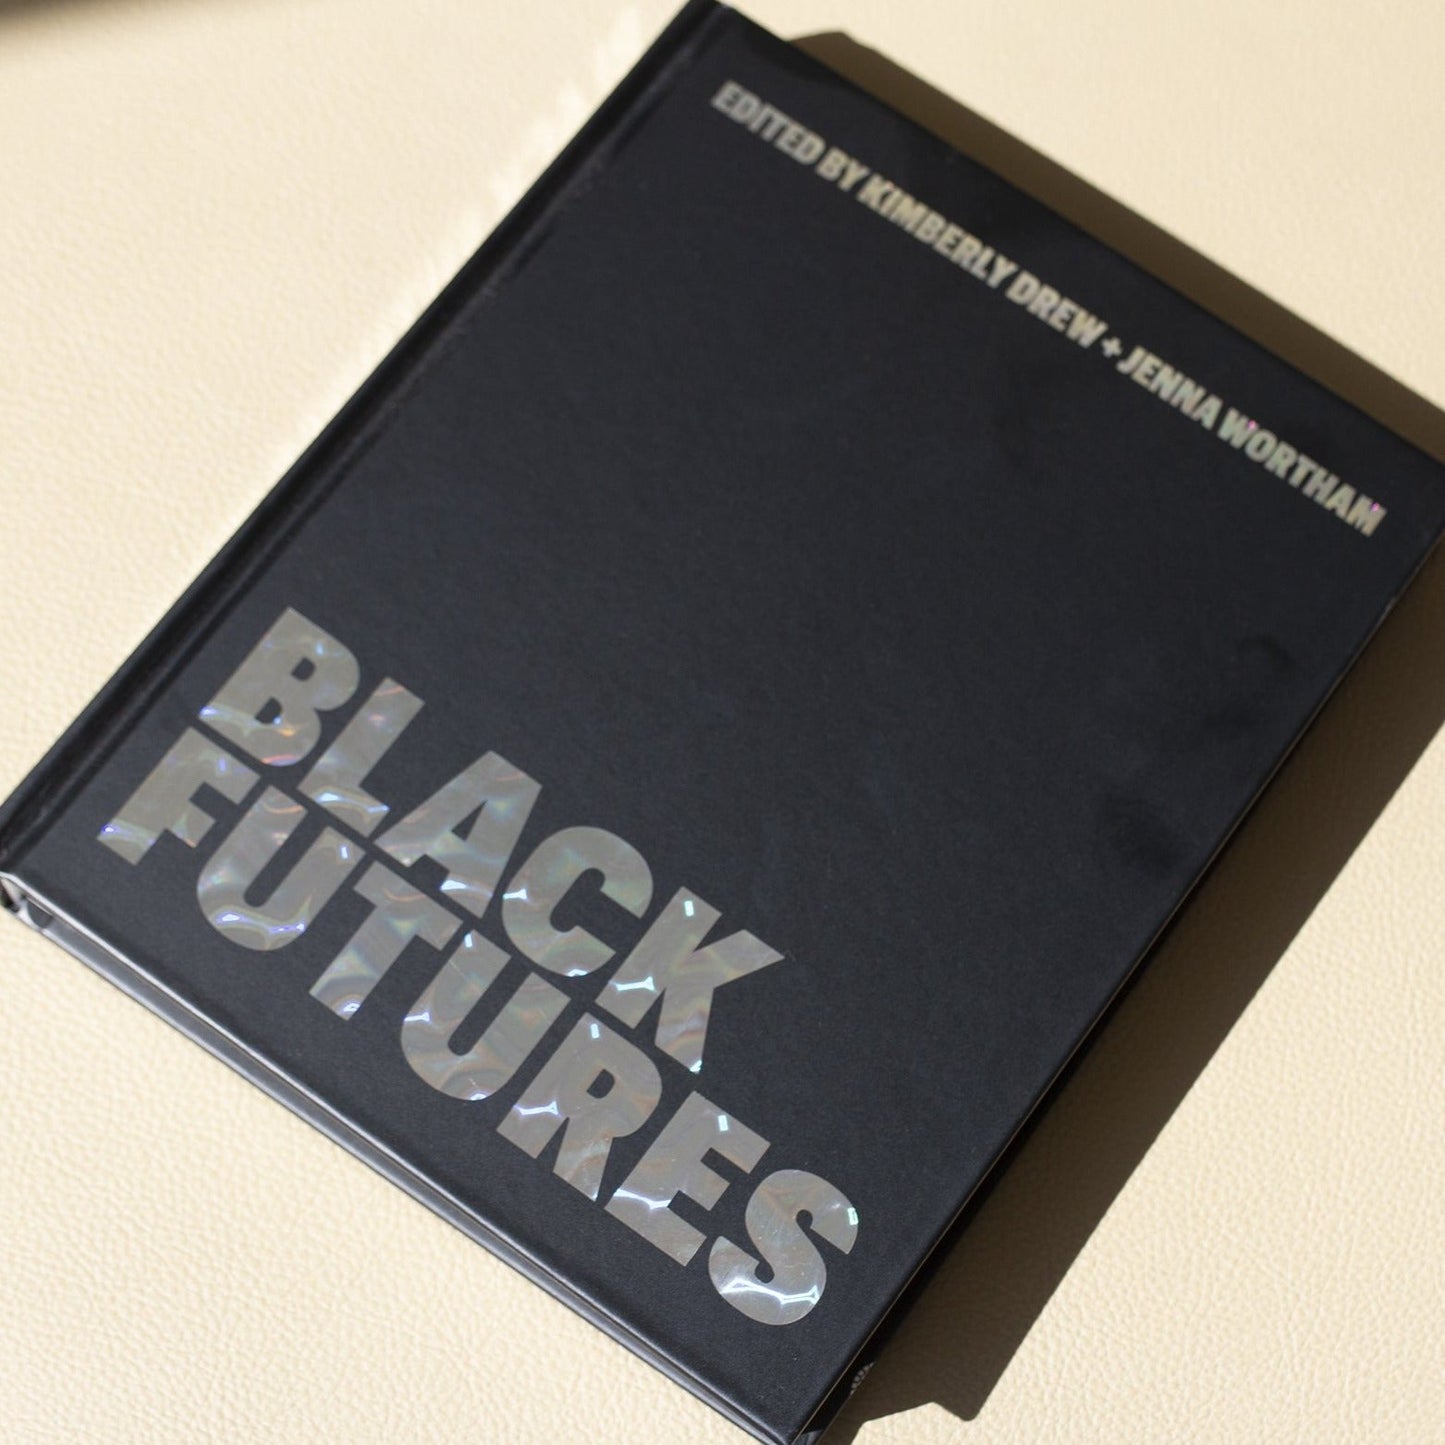 Black Futures by Kimberly Drew + Jenna Wortham